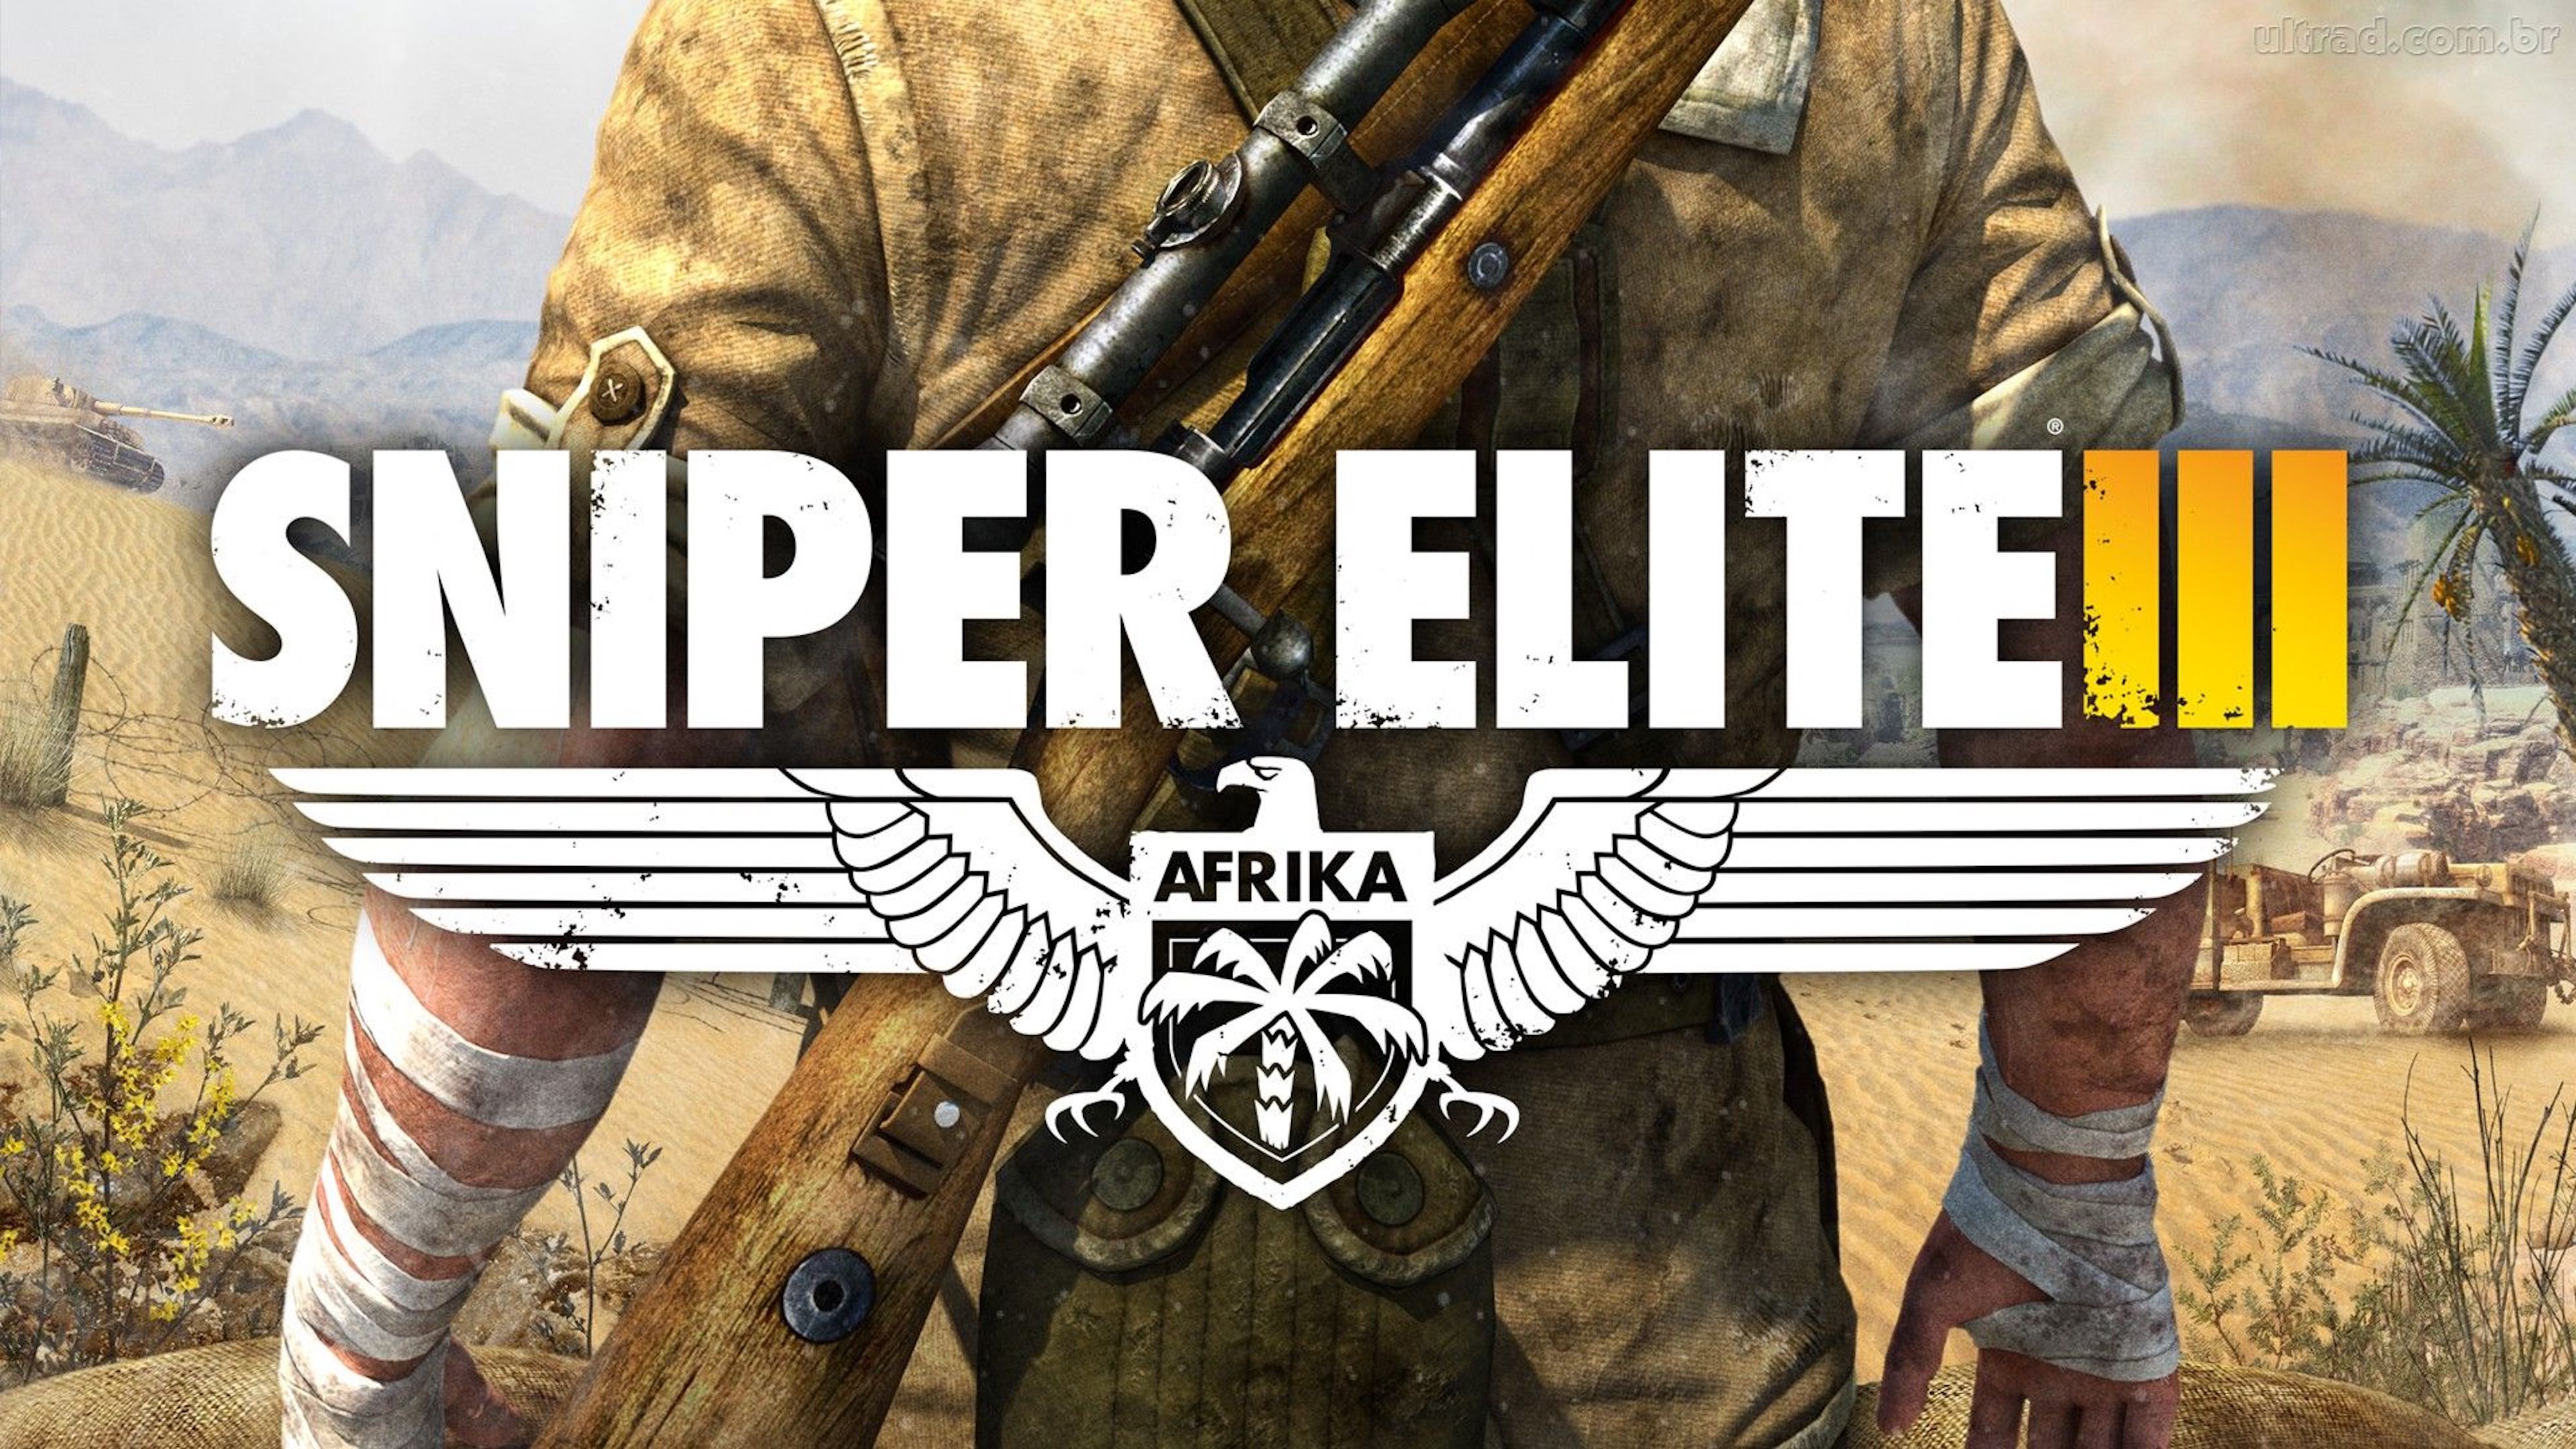 sniper elite 3 co op ps4